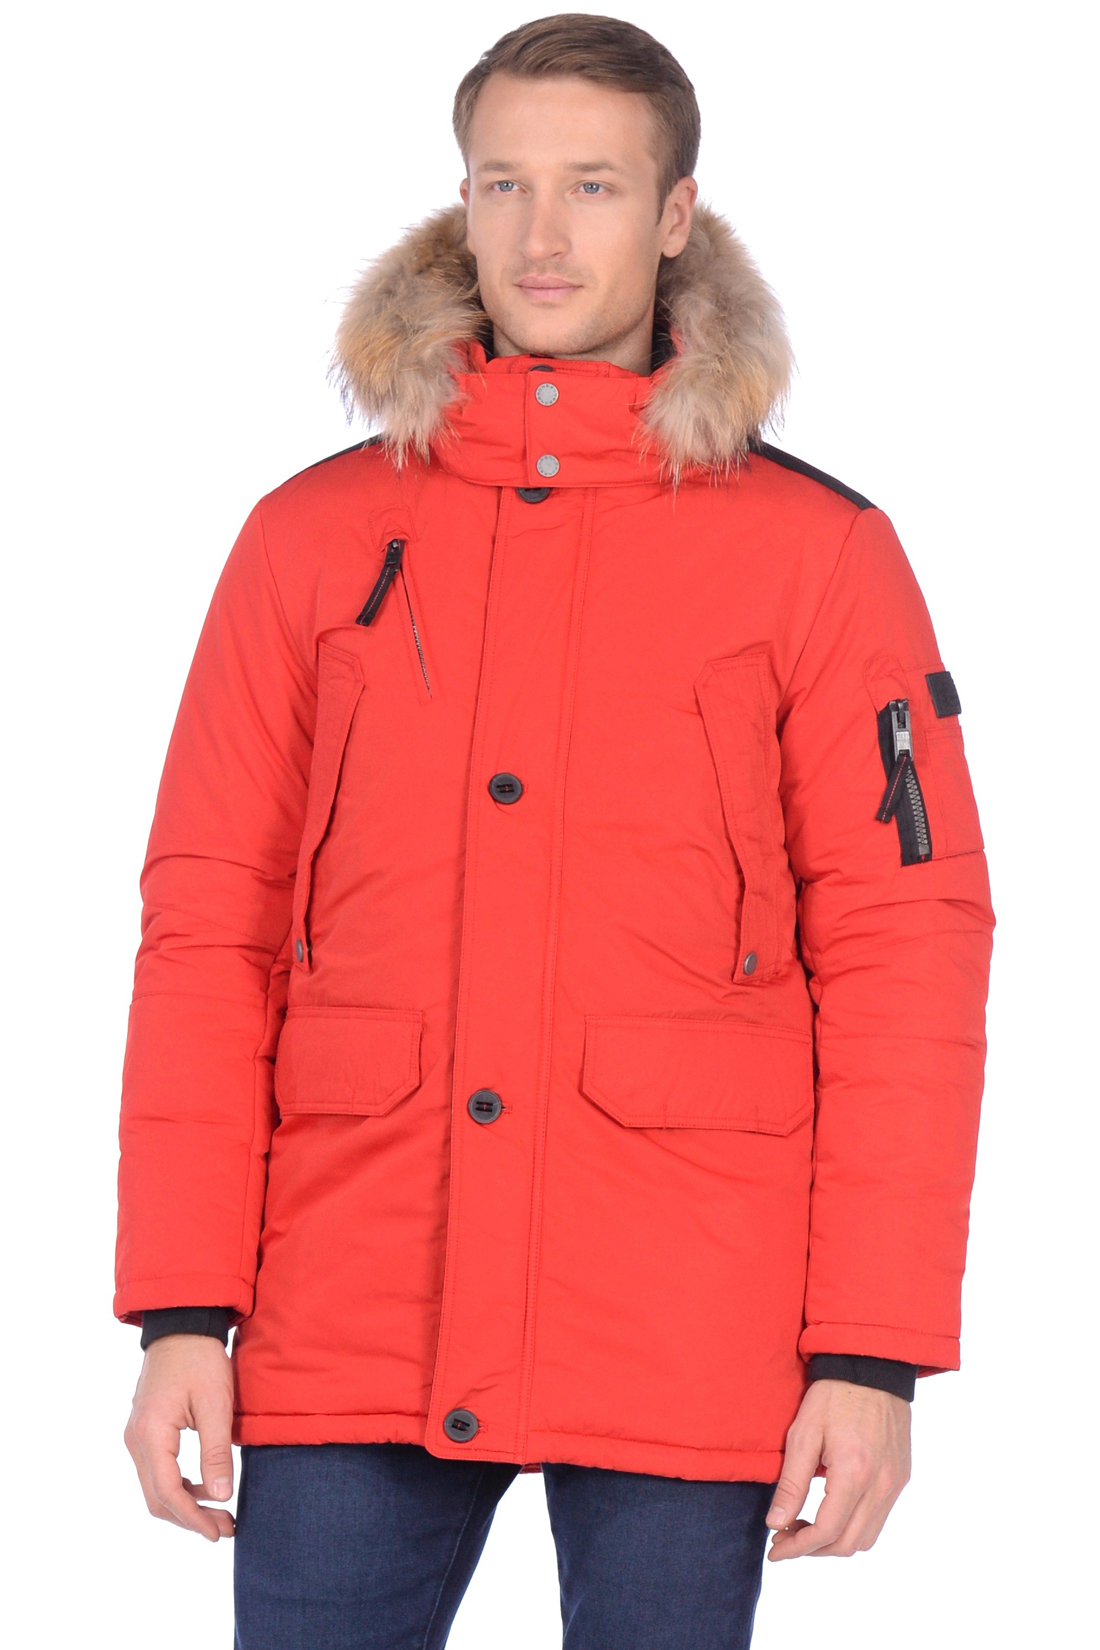 Куртка-парка с меховой отделкой (арт. baon B539532), размер 4XL, цвет красный